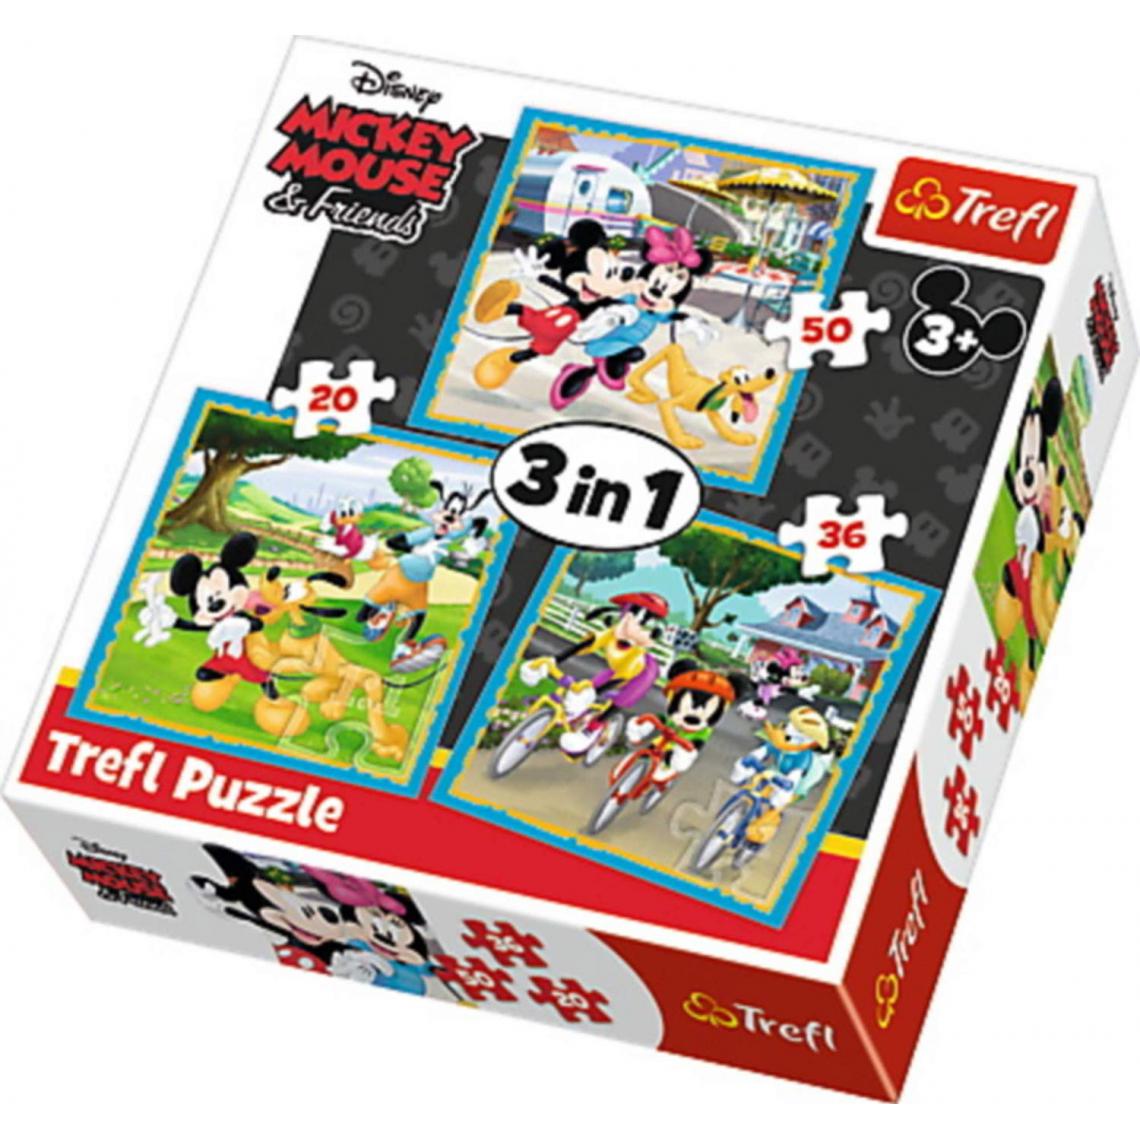 Trefl - trefl- Puzzle 3 en 1 modèle Minnie&Mickey Mouse 20-36-50 pièces, 34846, Multicolore - Animaux